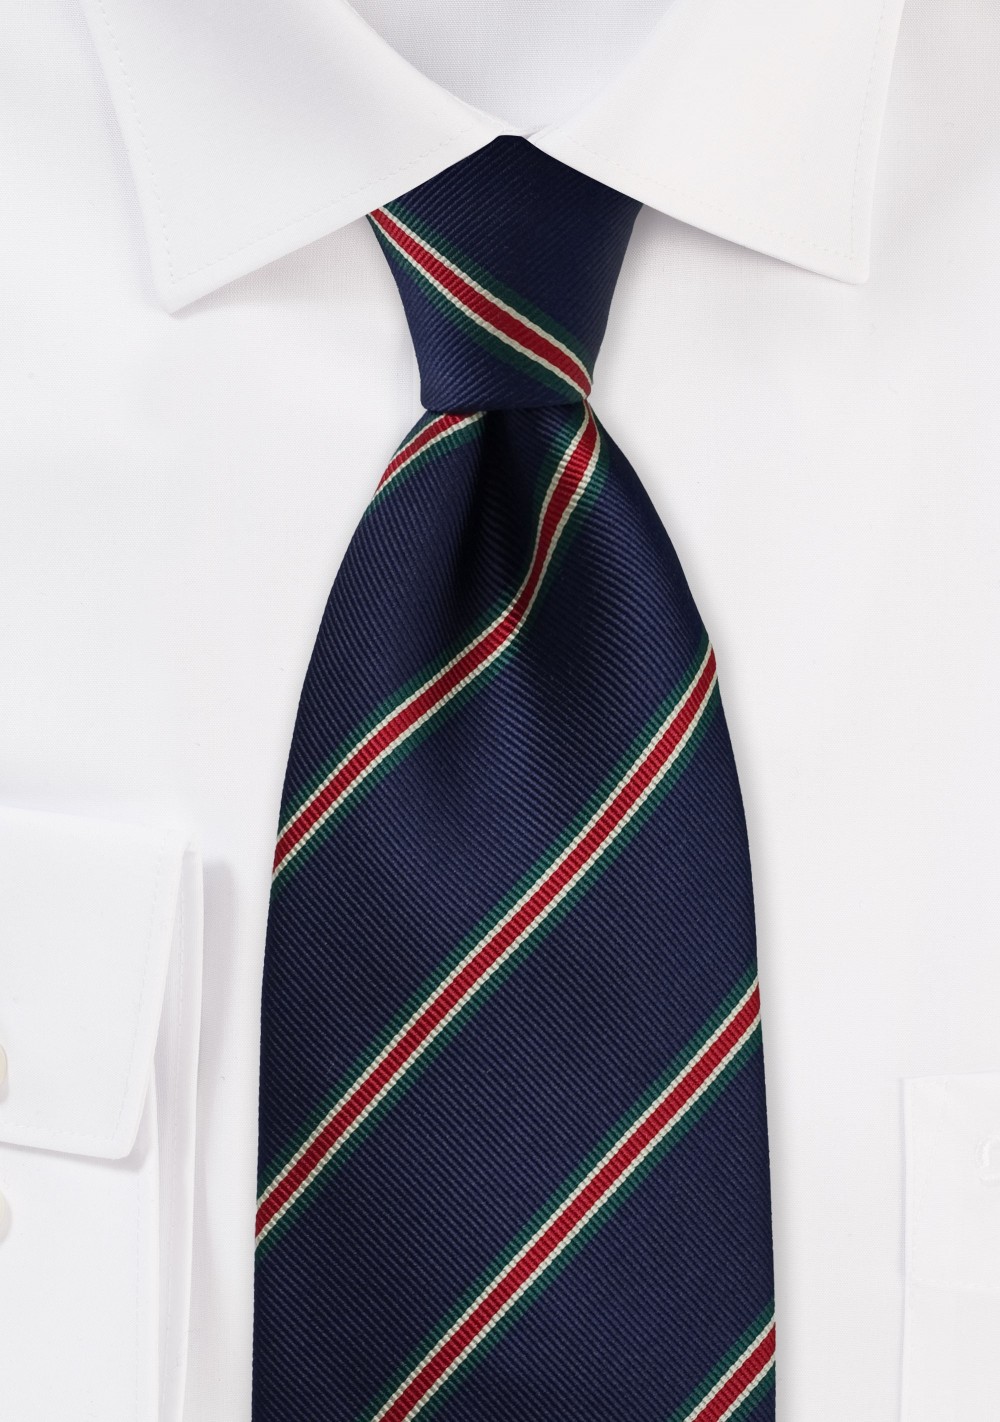 XL British Striped Tie in Navy